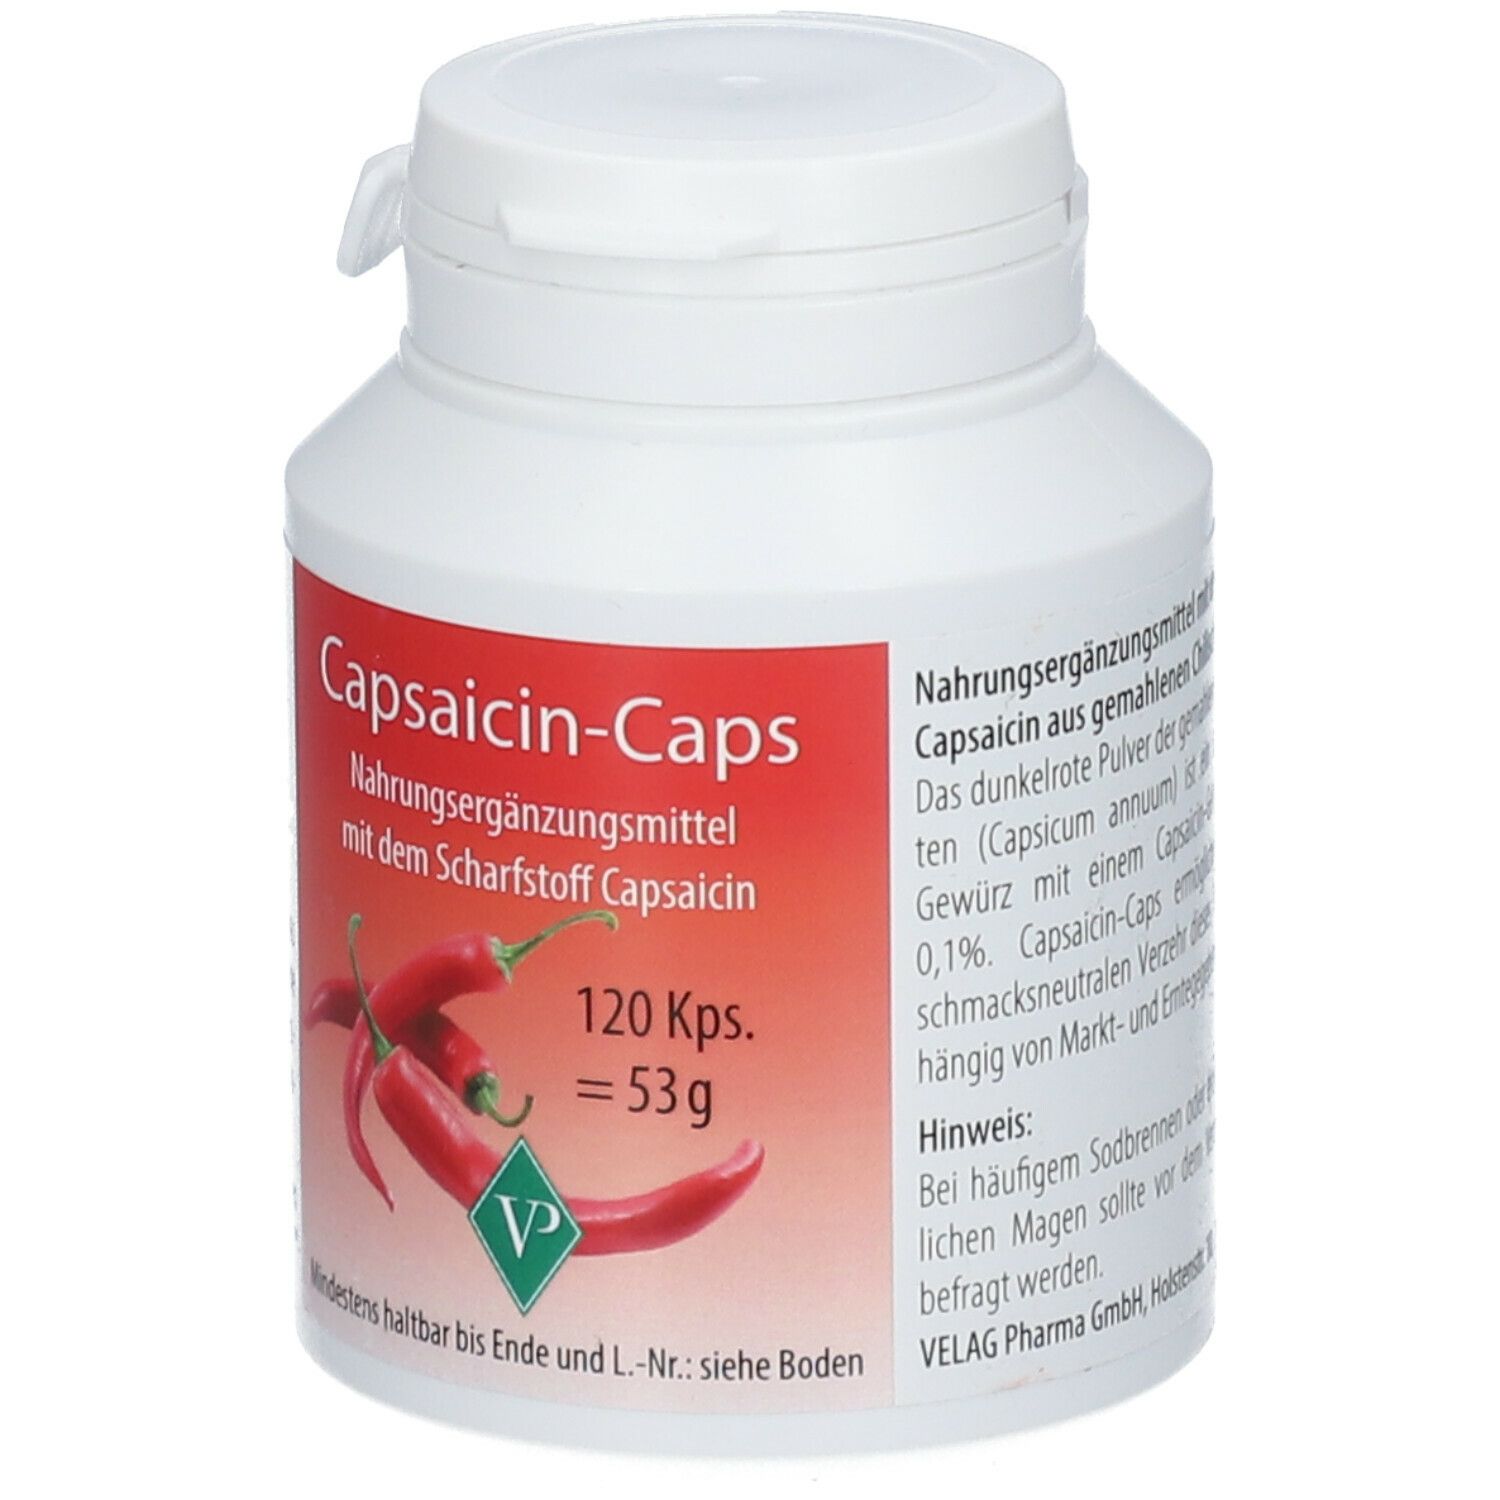 Capsaicin-Caps